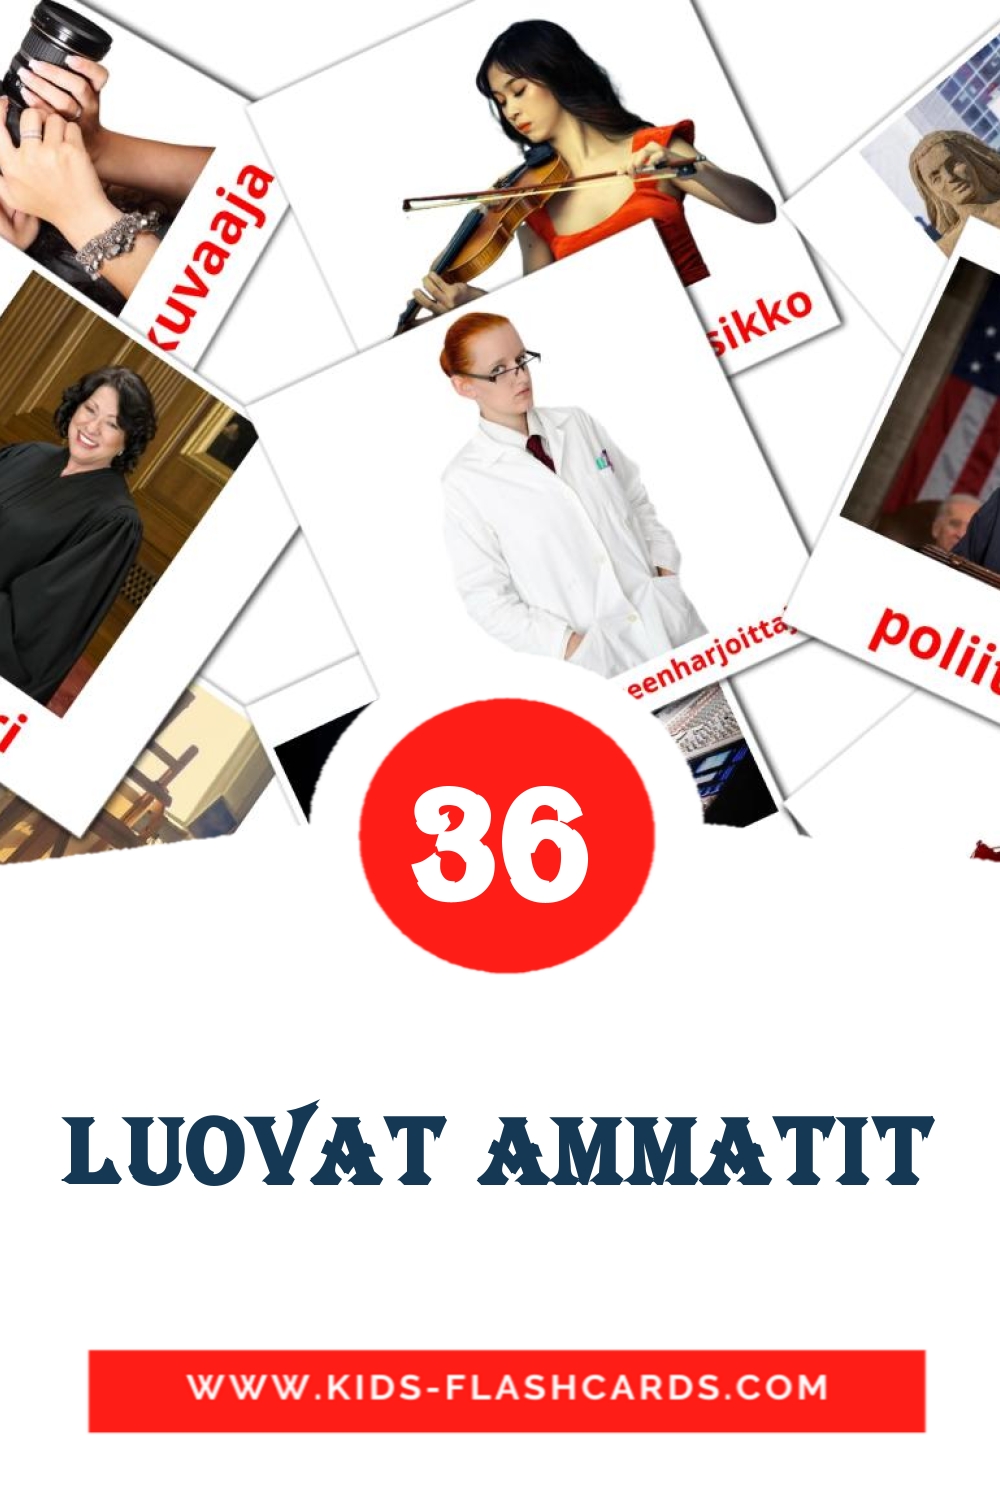 36 carte illustrate di Luovat ammatit per la scuola materna in finlandese